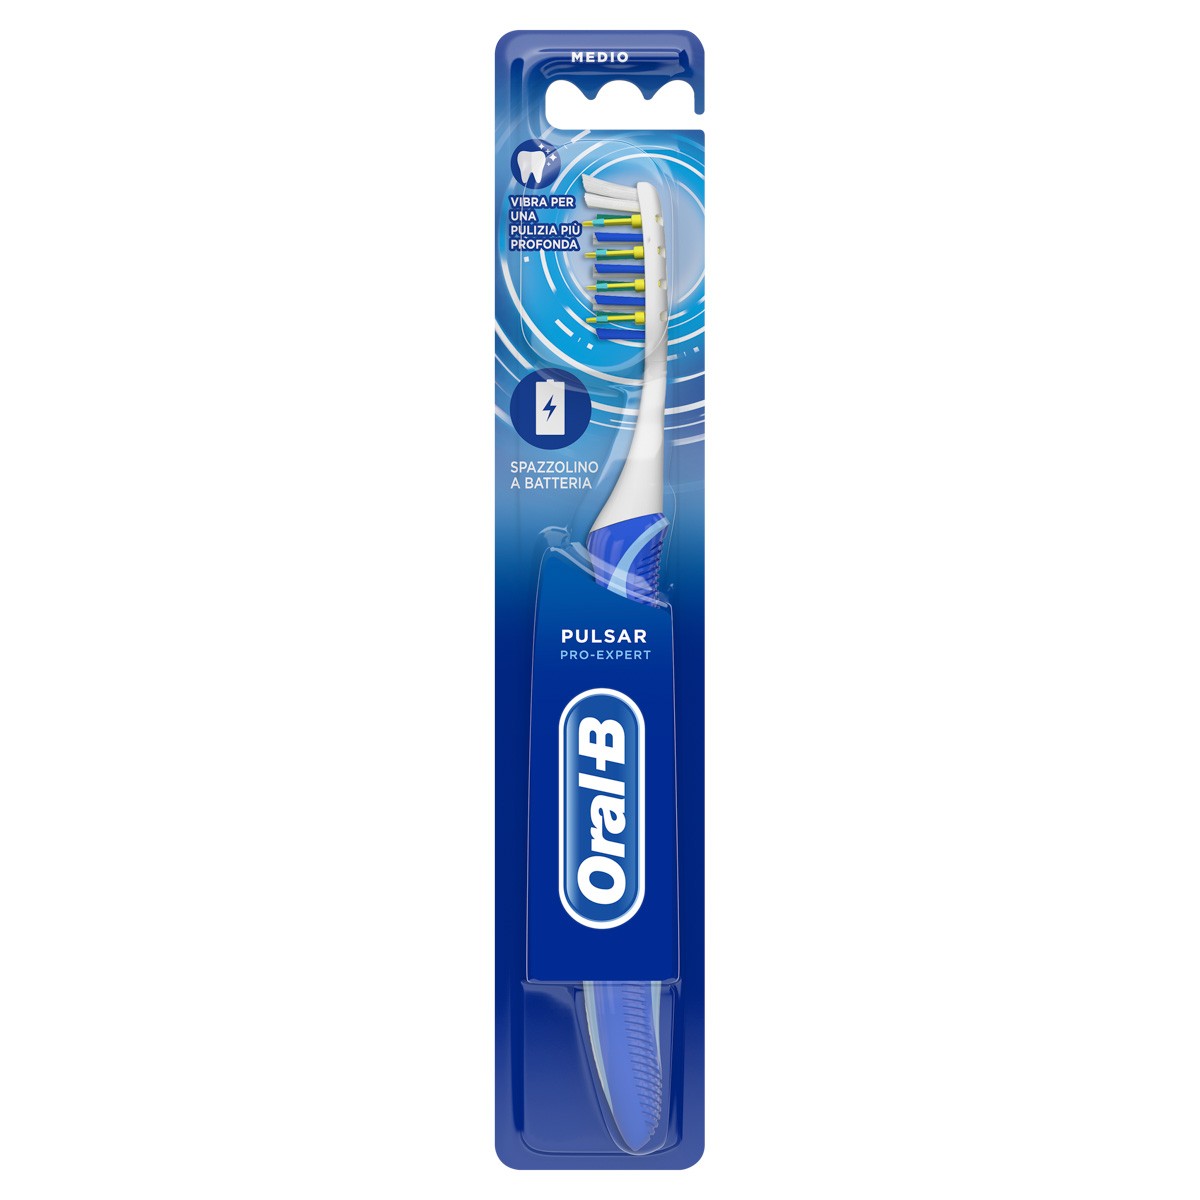 OralB cepillo pulsar 35 medio